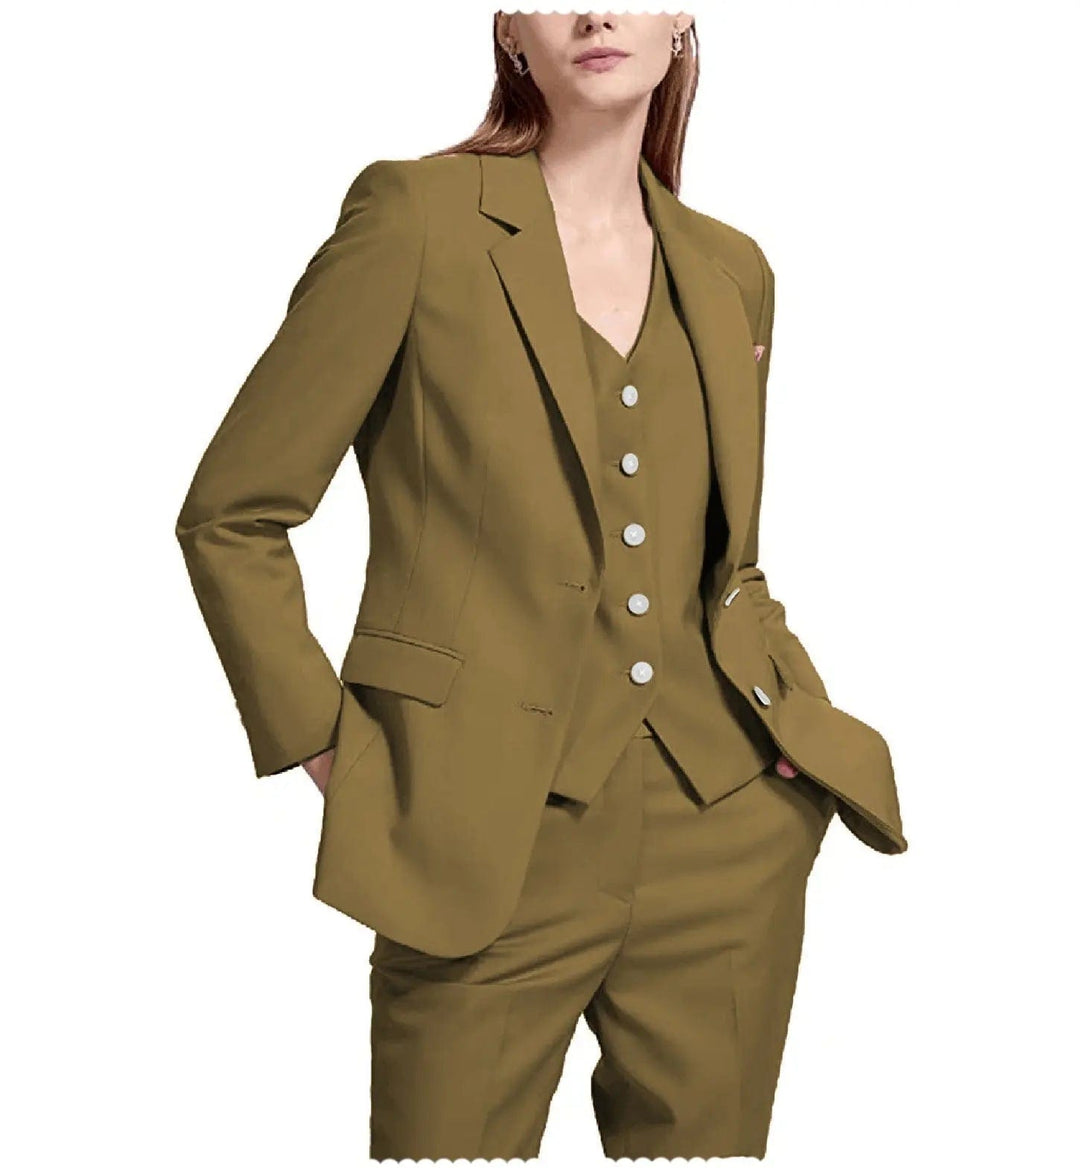 solovedress Casual Women Flat Notch Lapel 3 Pieces Suit (Blazer+vest+Pants)